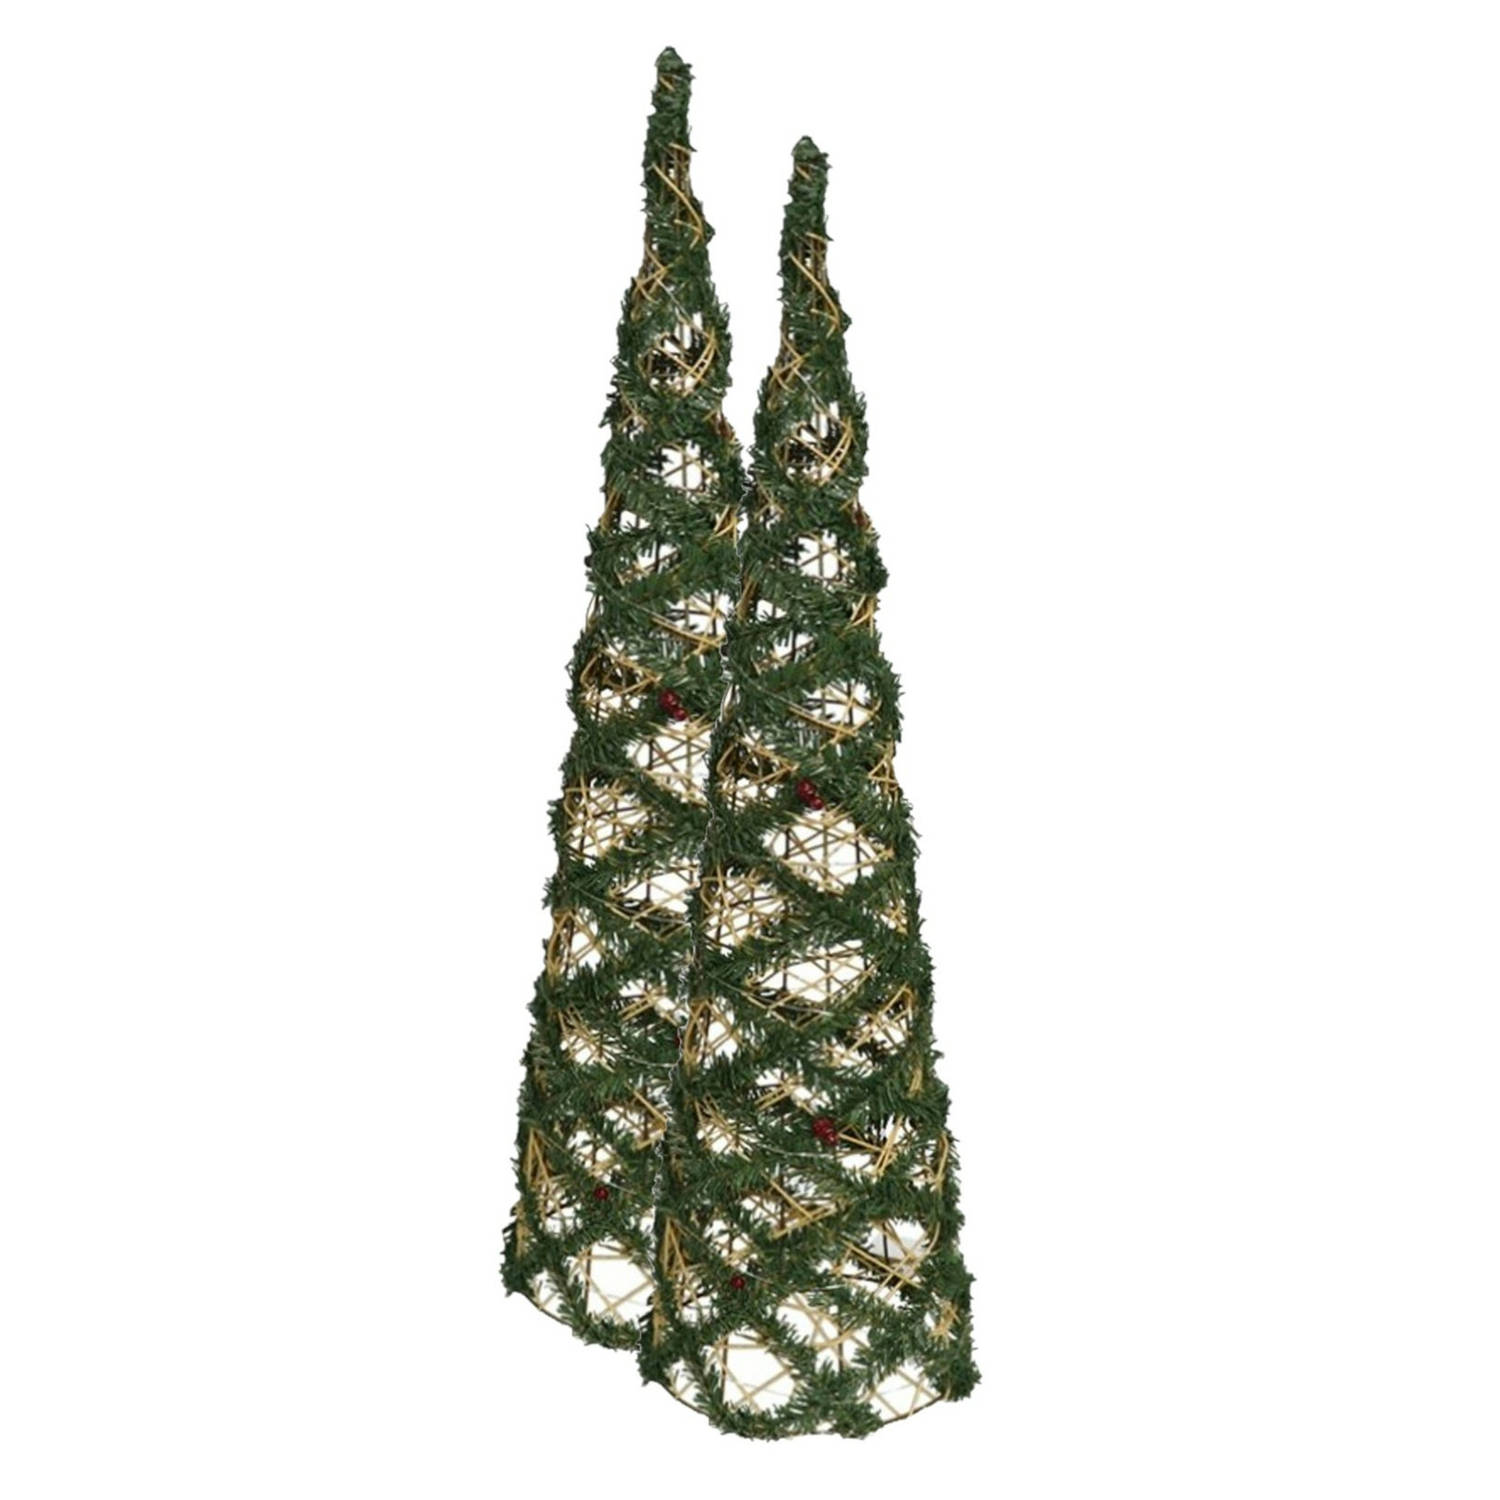 2x stuks kerstverlichting figuren Led kegel kerstbomen draad/groen 78 cm 60 lampjes - kerstverlichting figuur